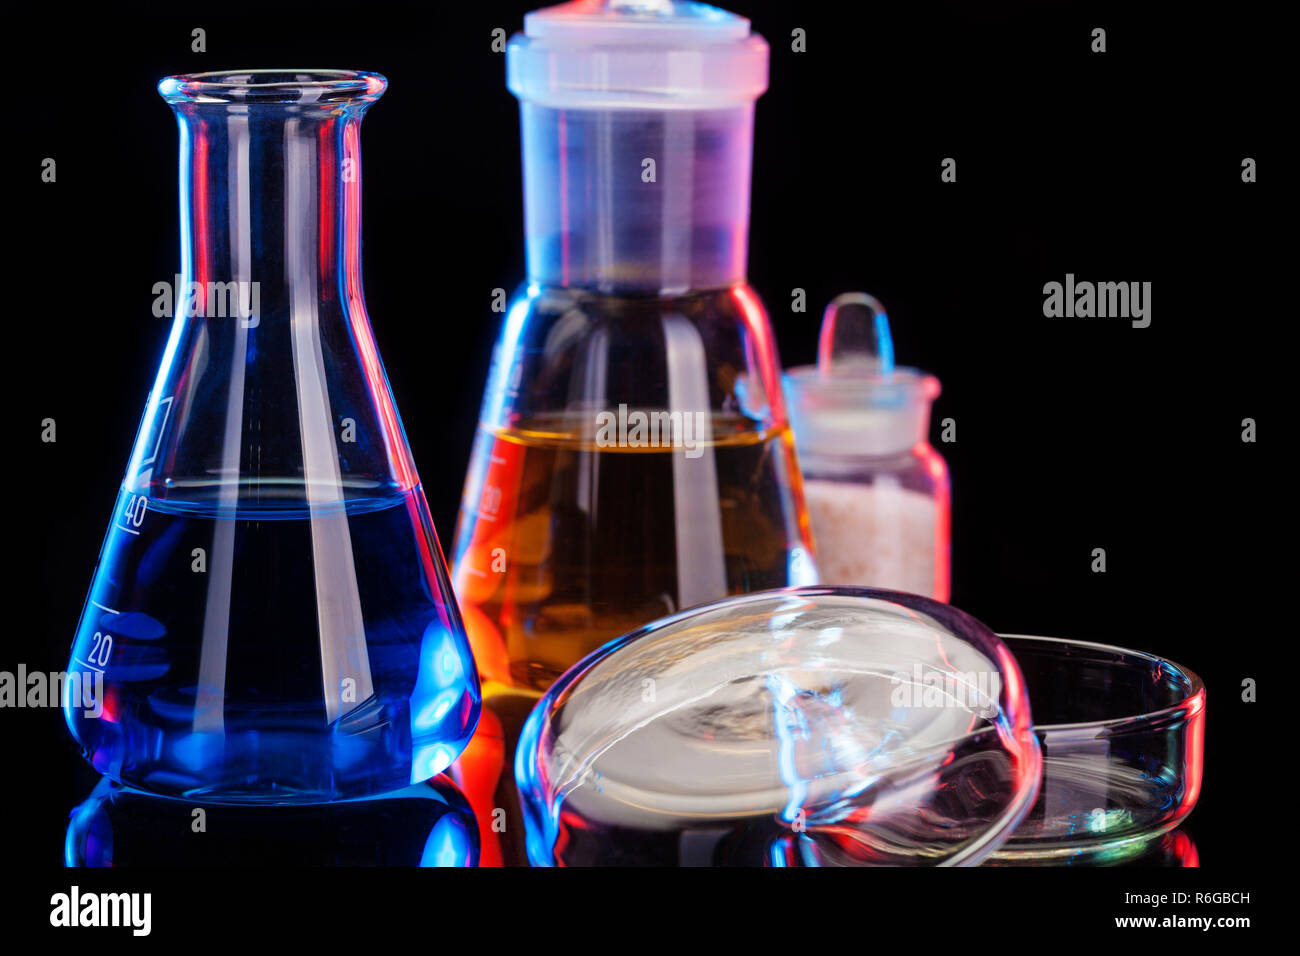 Das Chemielabor Hintergrund. Verschiedene Glas Chemie Laborgeräte  Stockfotografie - Alamy